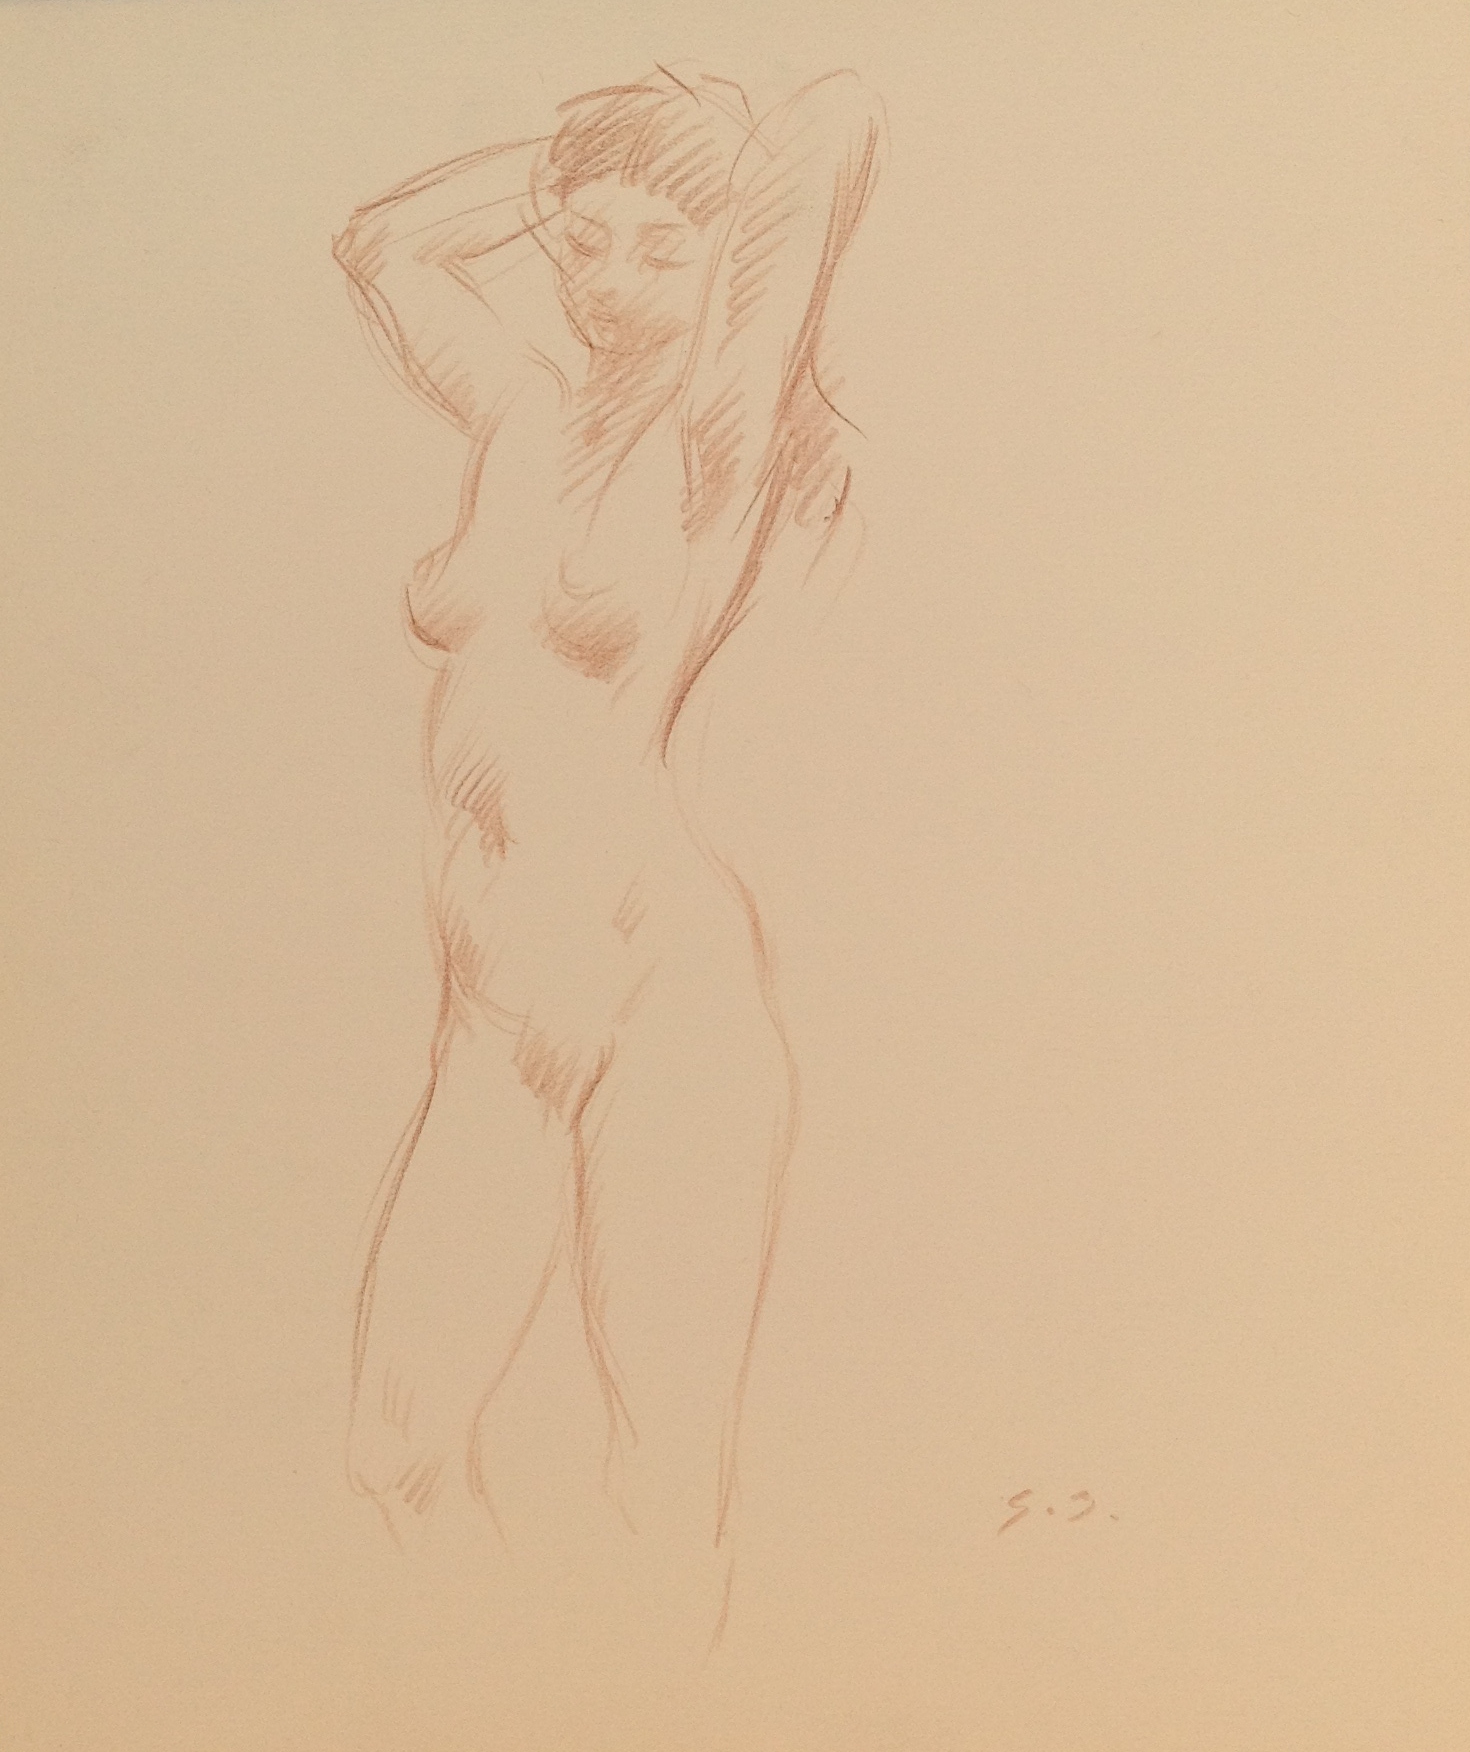 Posa suadente ritrae una donna nuda con le mani tra i capelli, di Gigi Busato. Disegno a matita su carta bianco e nero, collezione di famiglia